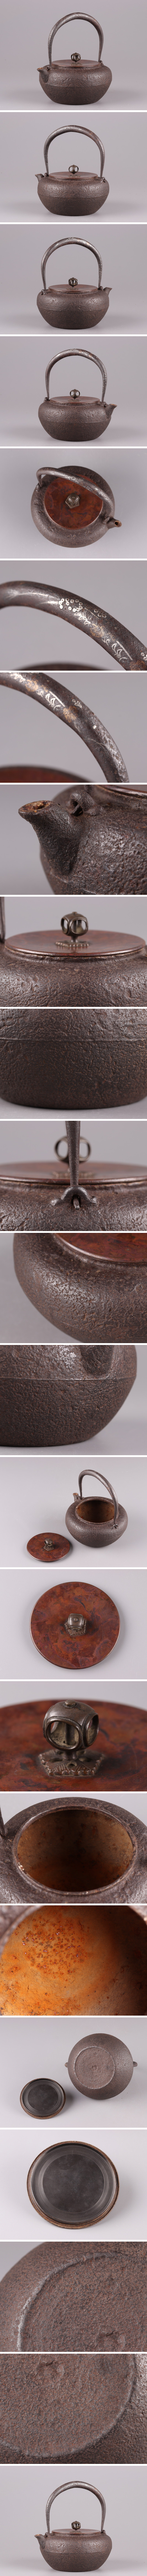 国産得価煎茶道具 時代鉄瓶 斑紫銅製蓋 提手銀象嵌細工 時代物 極上品 初だし品 4451 鉄瓶